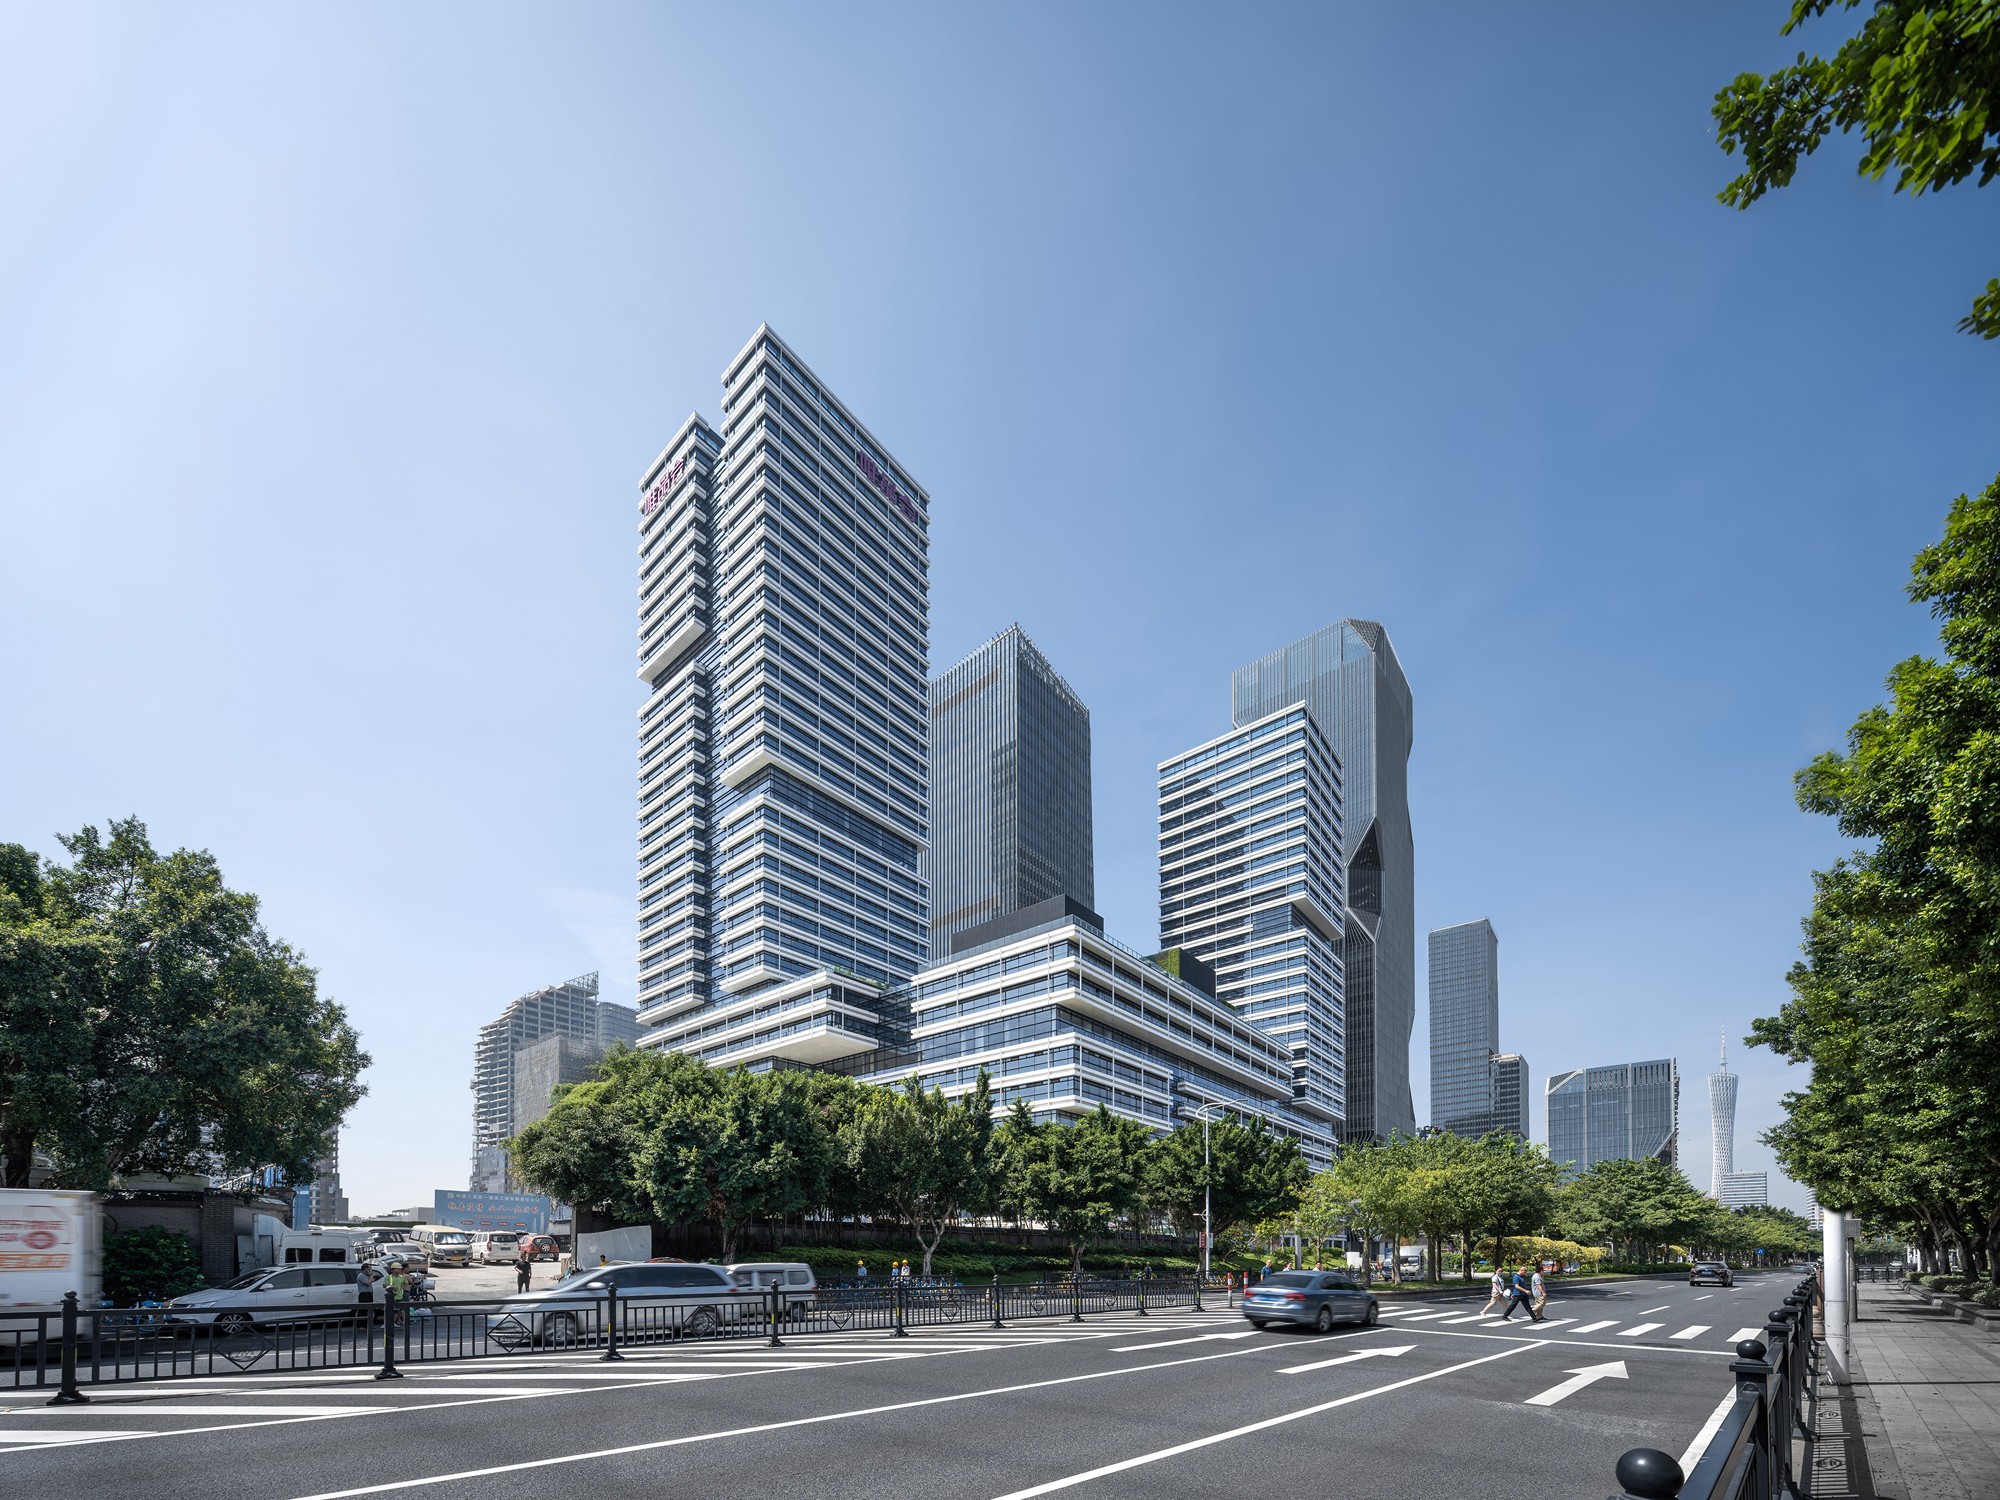 gmp Architekten von Gerkan, Marg und Partner, Hamburg, Deutschland: Vipshop Headquarters, Guangzhou, China